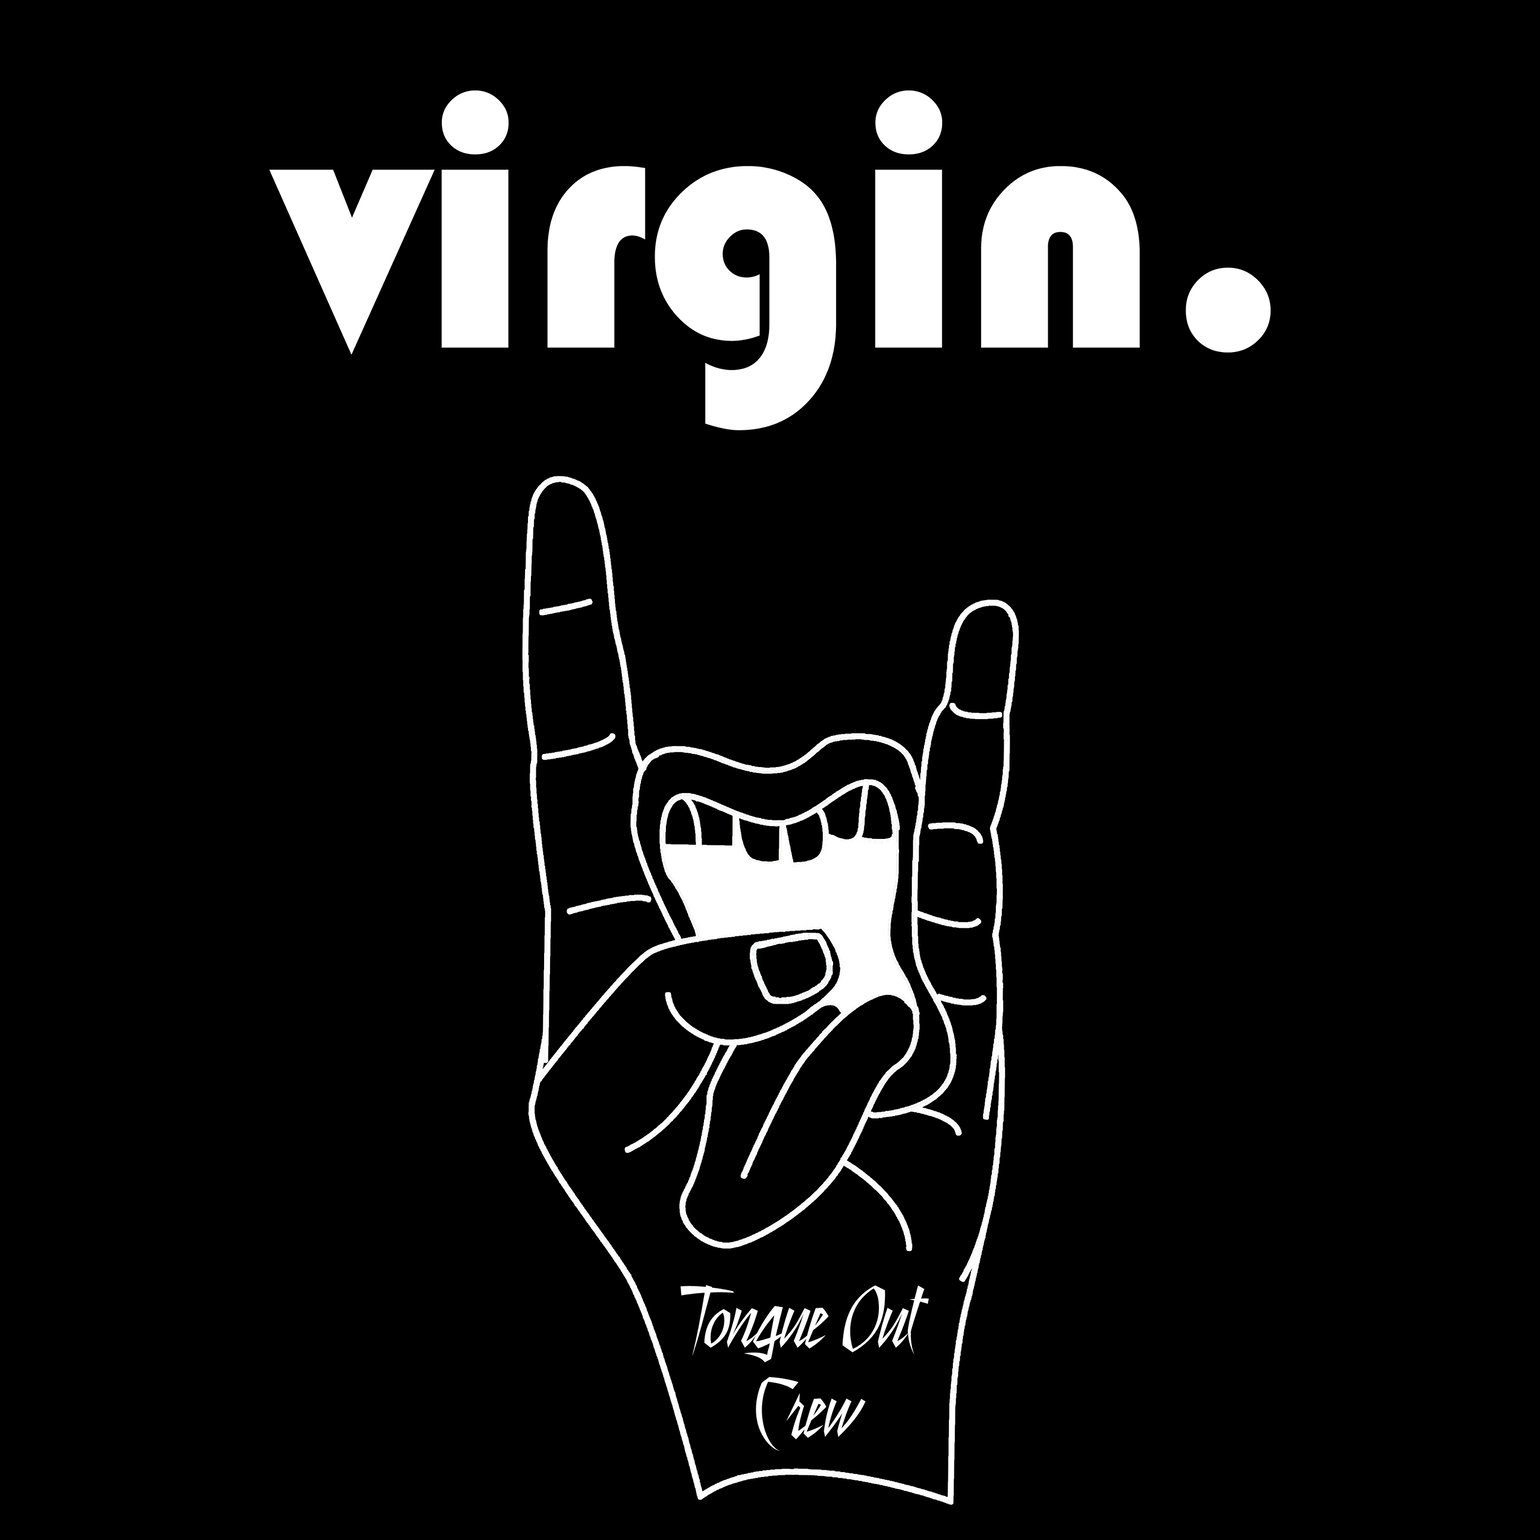 Image of Virgin